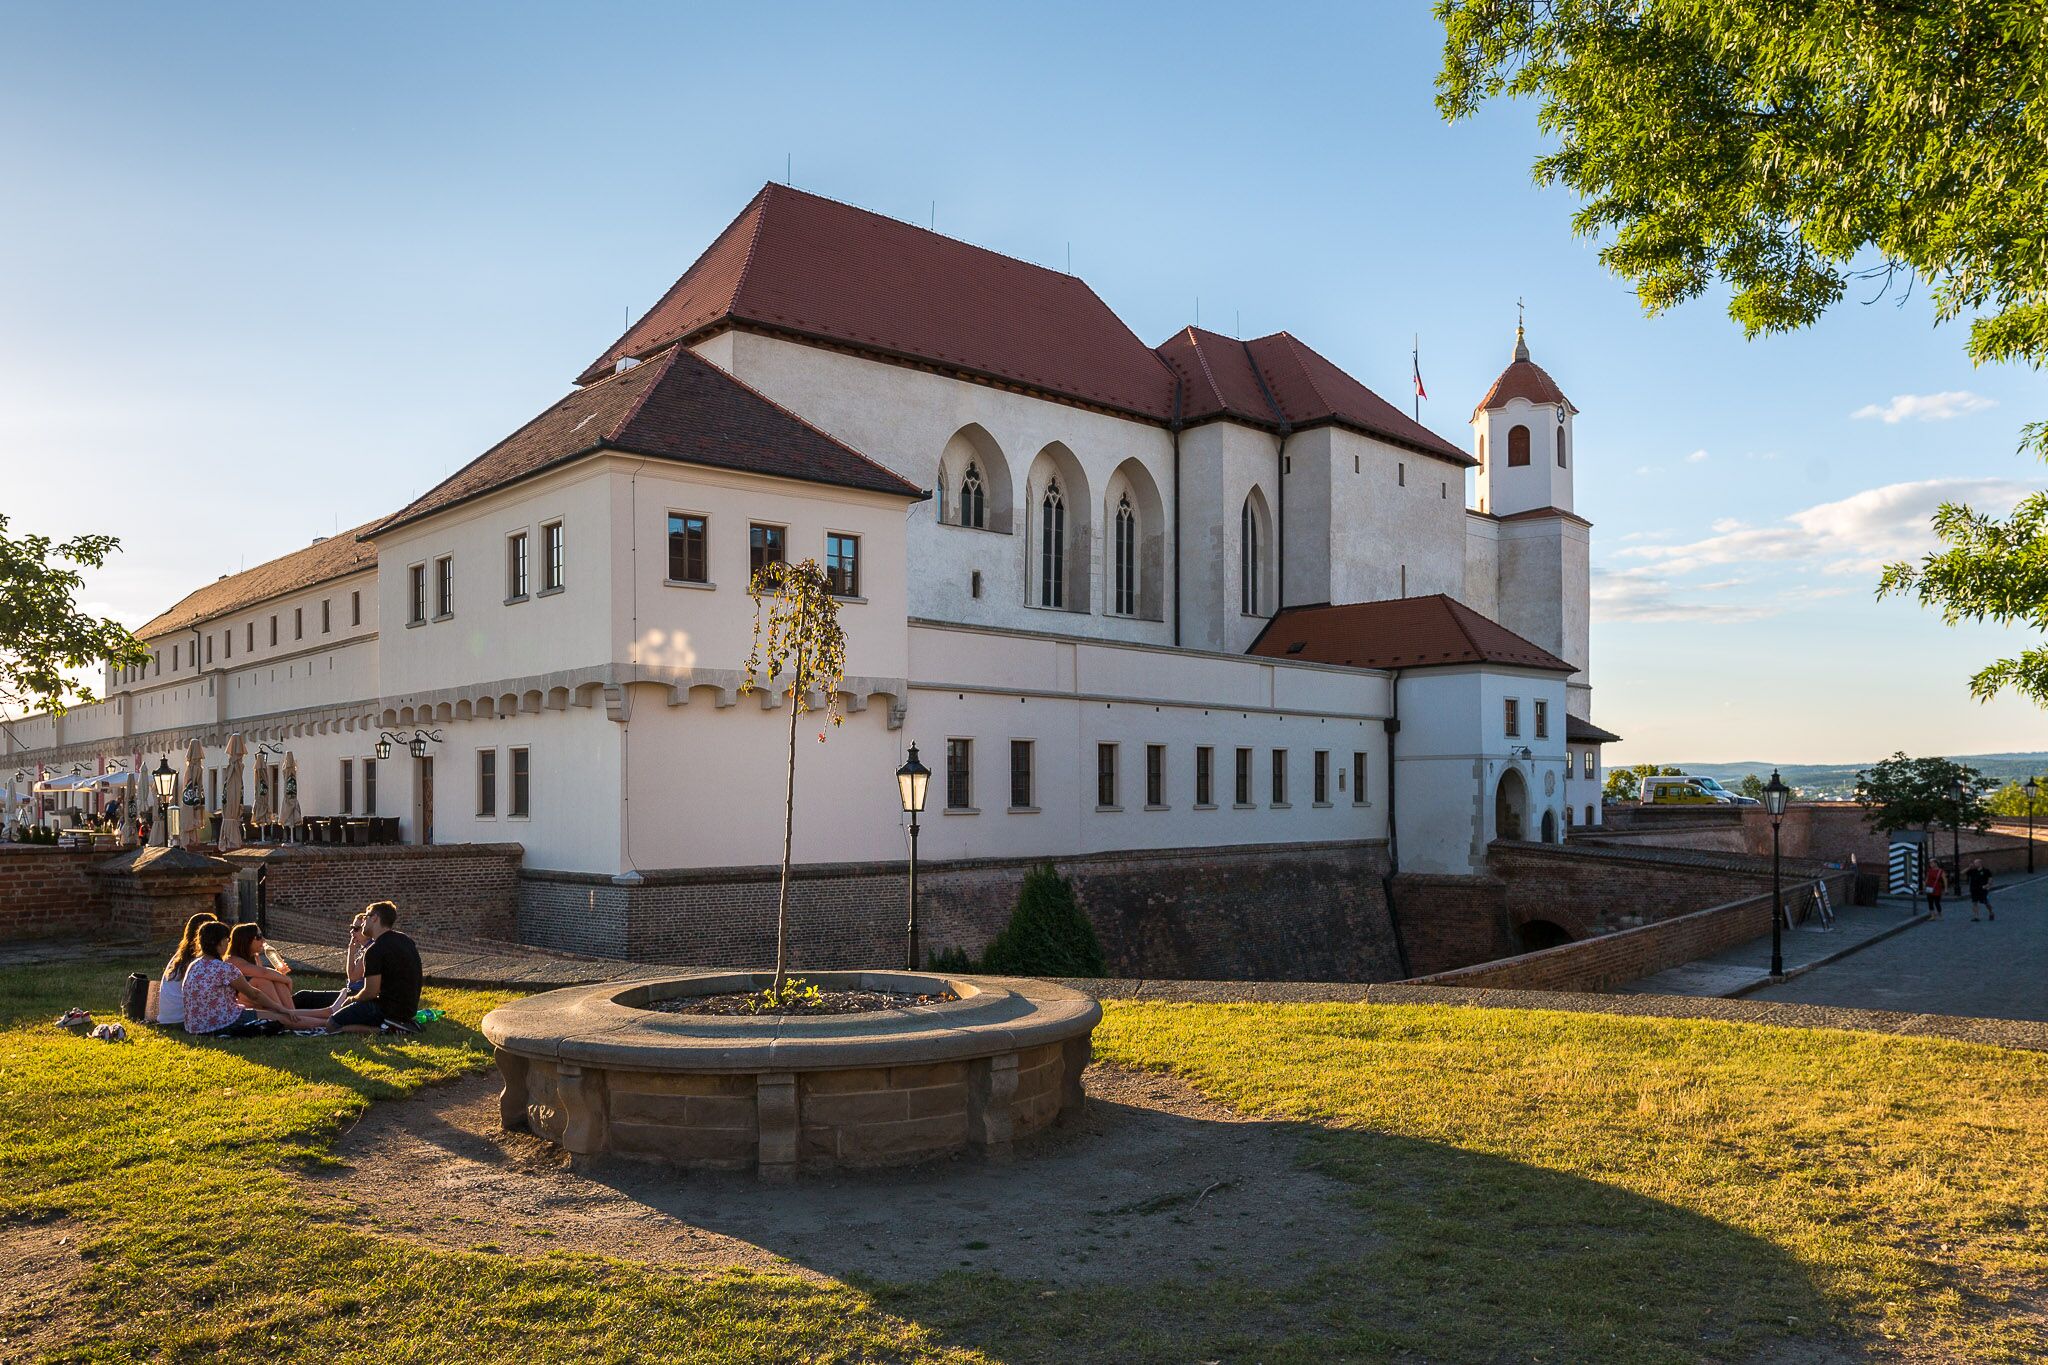 Dobytí Špilberka: Objevte kouzlo hradu, který již po staletí stráží Brno